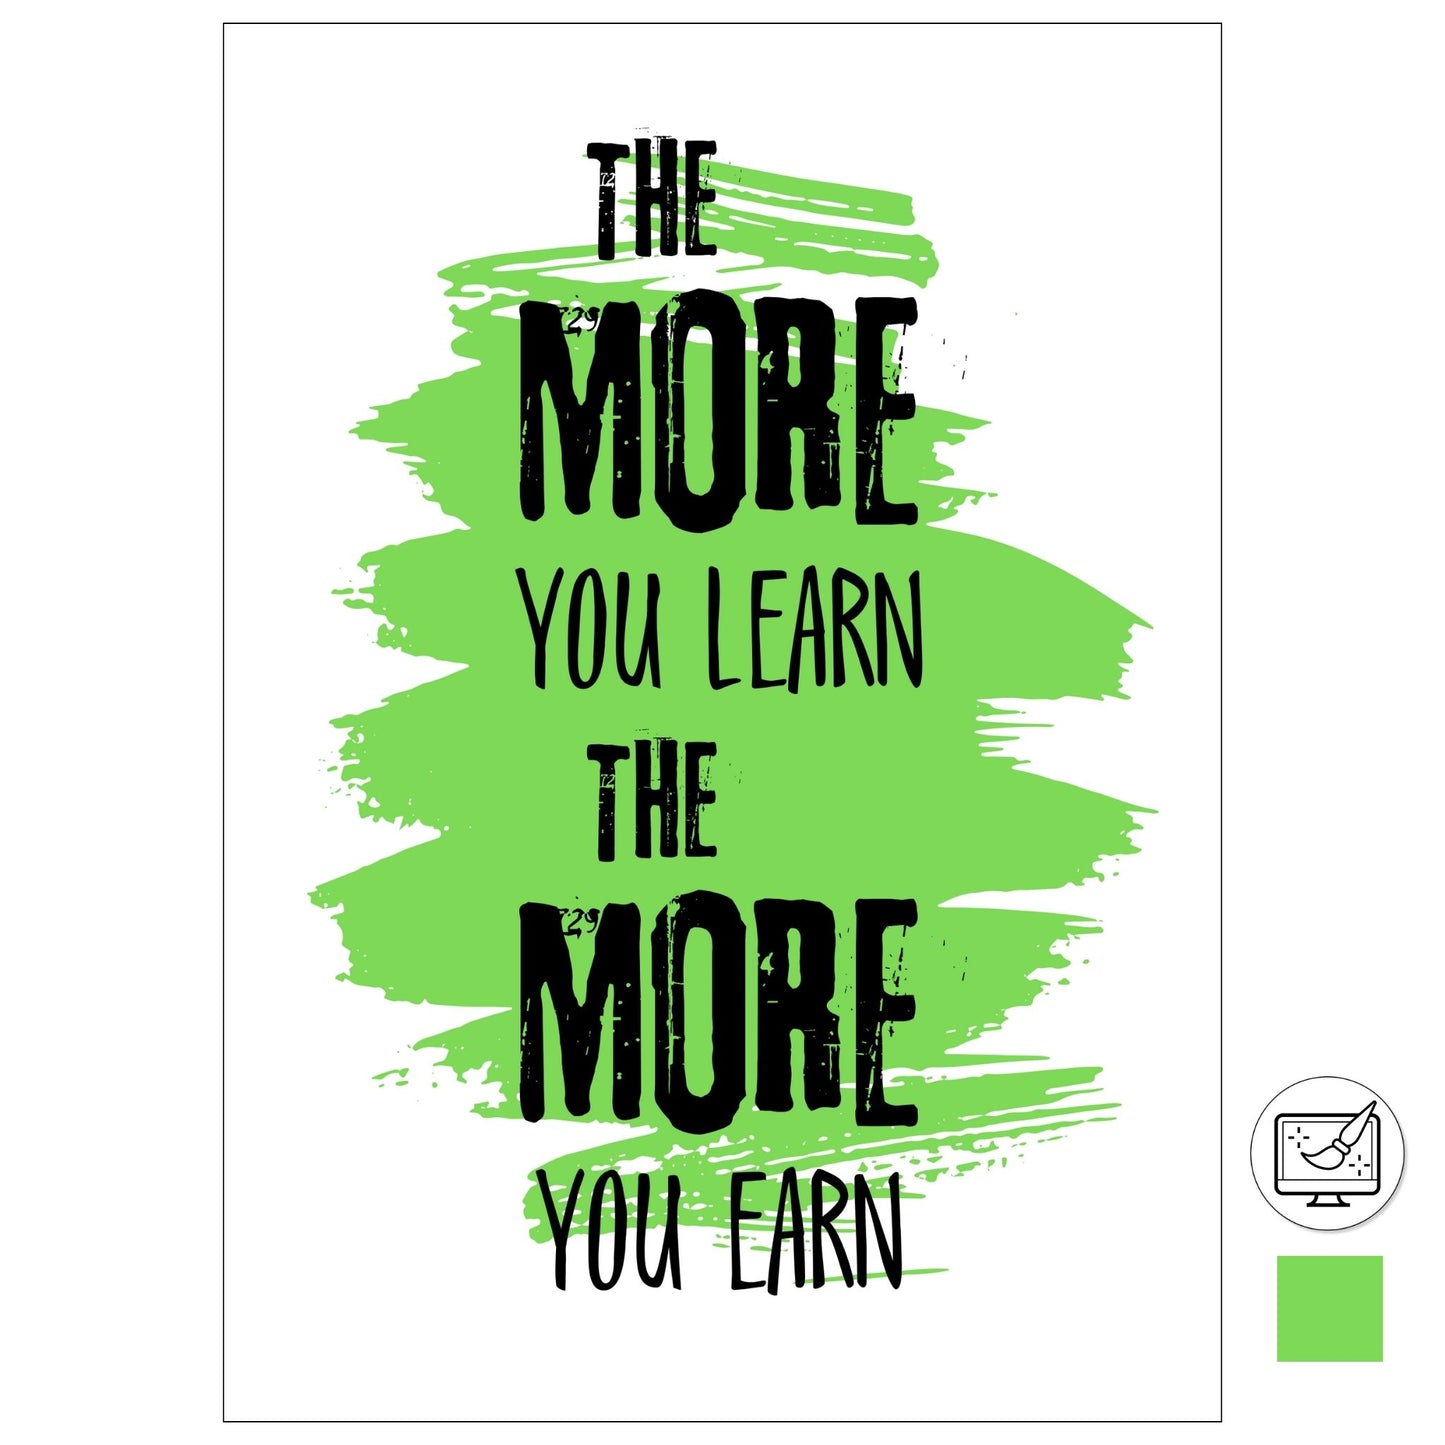 Grafisk tekstplakat med sort skrift på hvit og grønn bakgrunn og tekst "The more yoy learn, the more you learn".